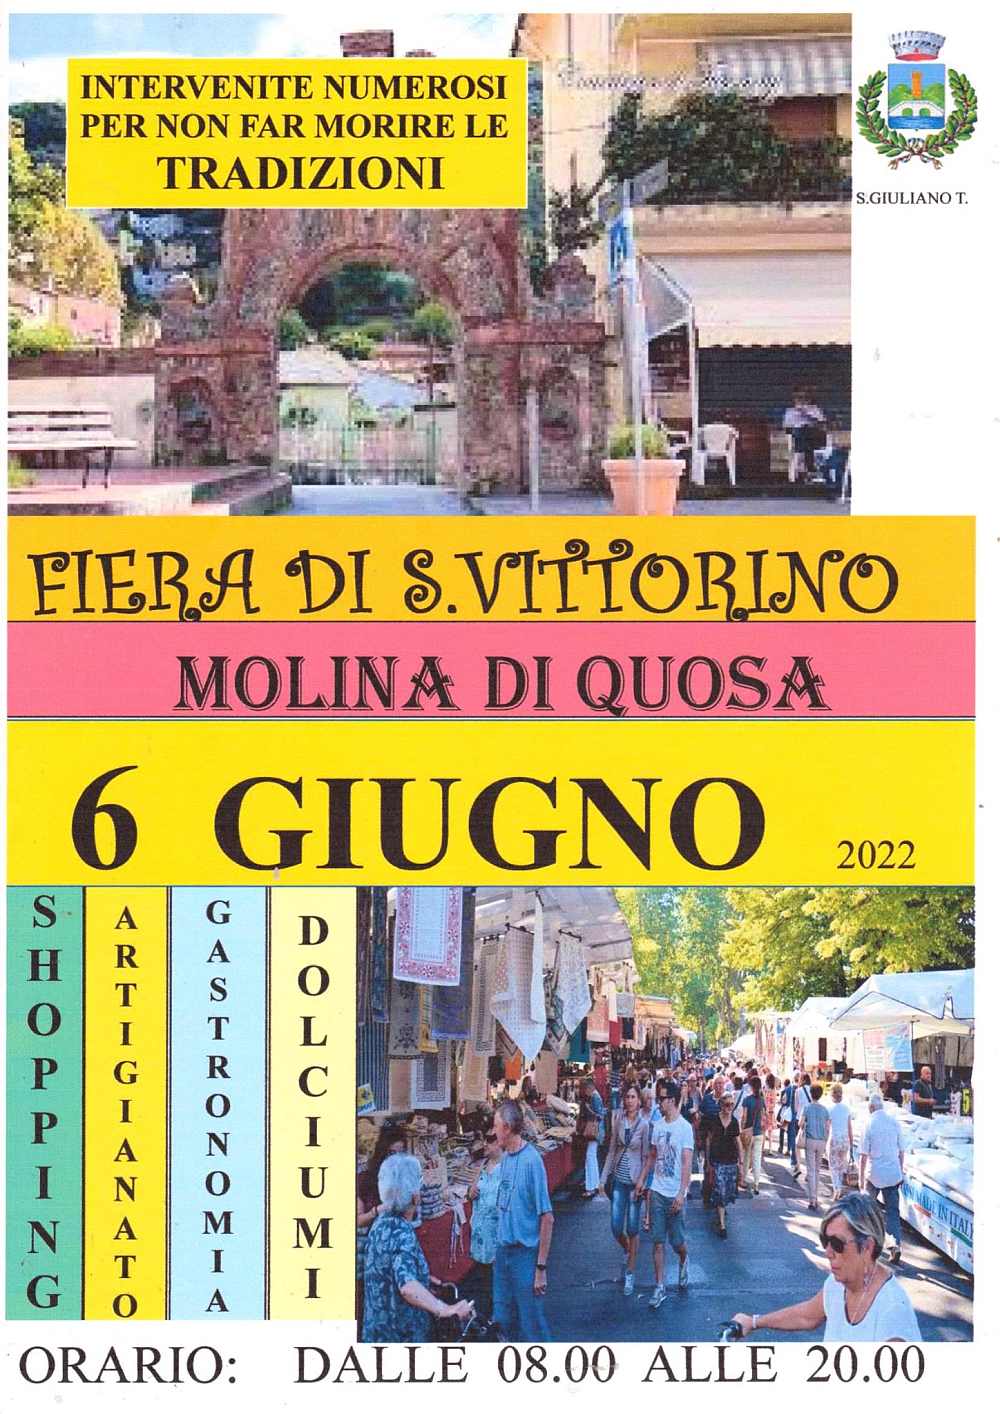 Molina di Quosa (PI)
"Fiera di San Vittorino"
6 Giugno 2022